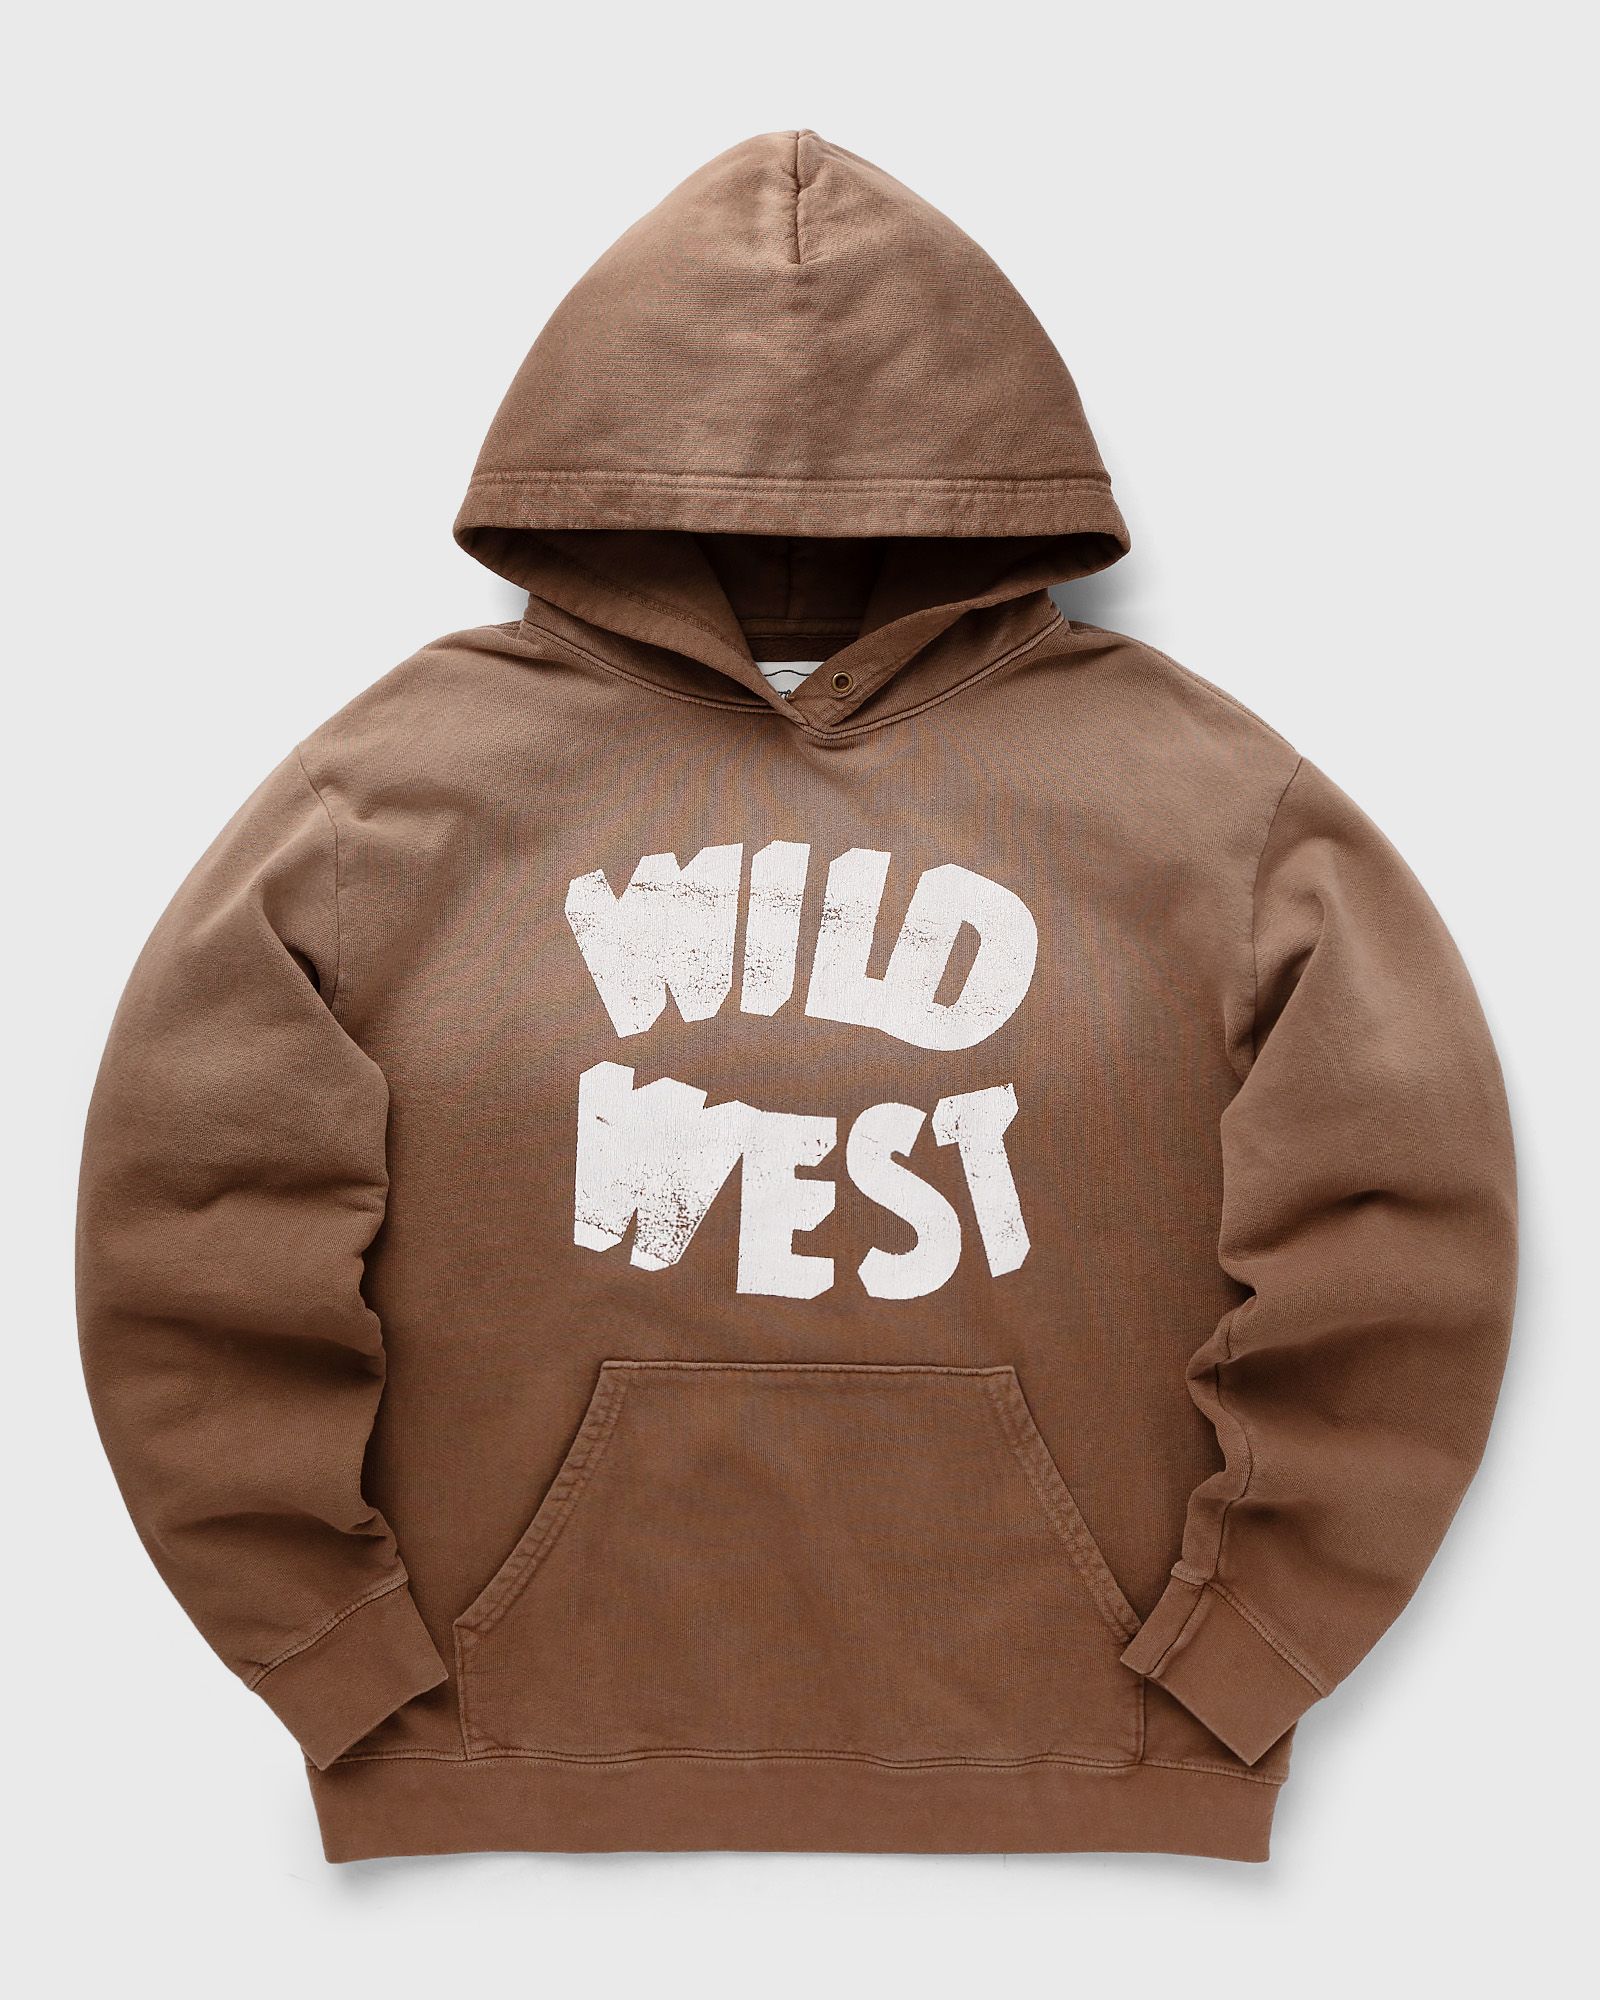 One of these Days - wild west hooded sweatshirt men hoodies brown in größe:xxl